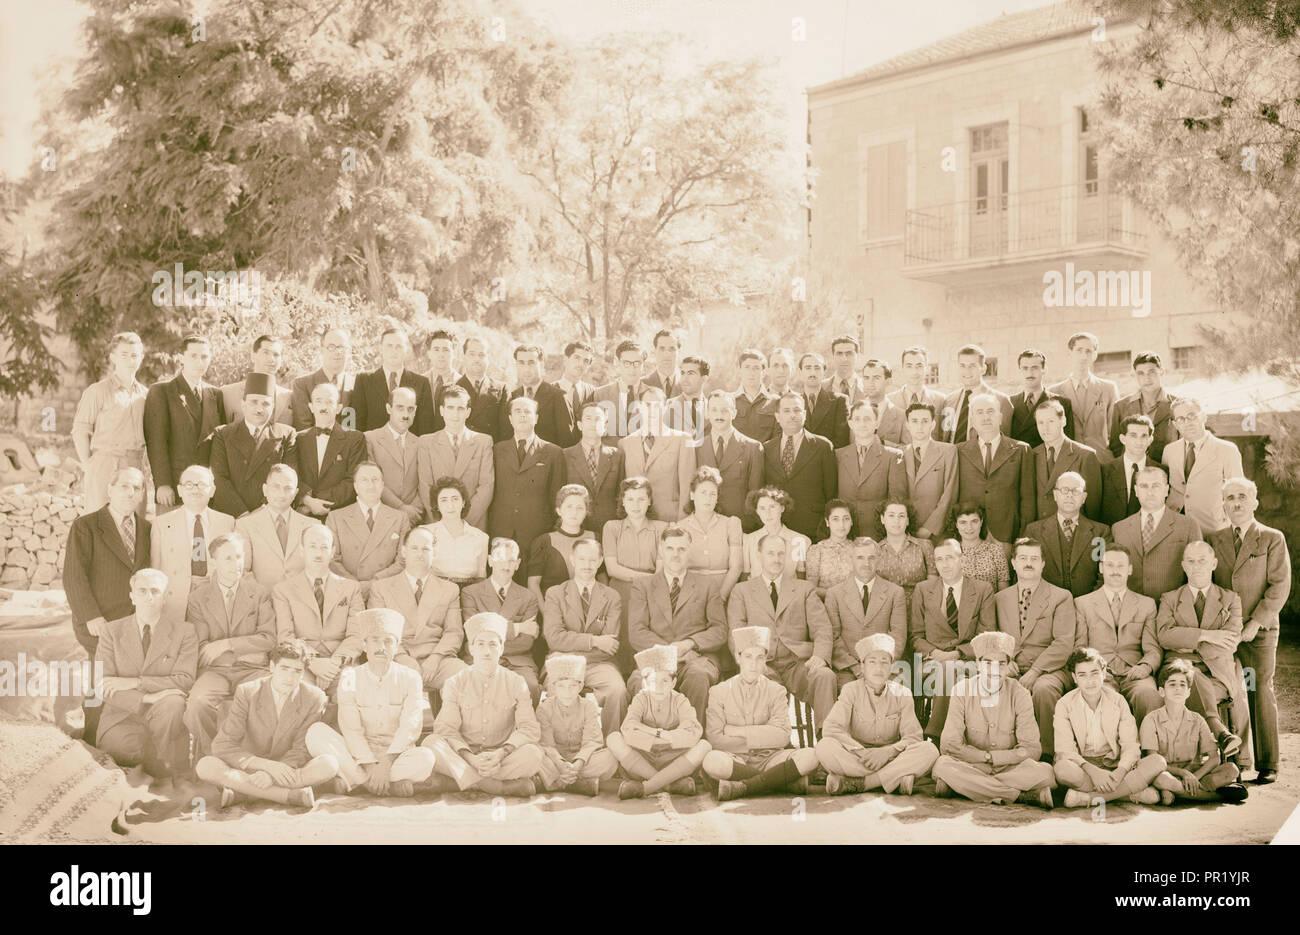 Gran grupo del Departamento de Salud Pública y los laboratorios, tomada el 2 de junio de 1944, el Oriente Medio, Israel y/o Palestina Foto de stock